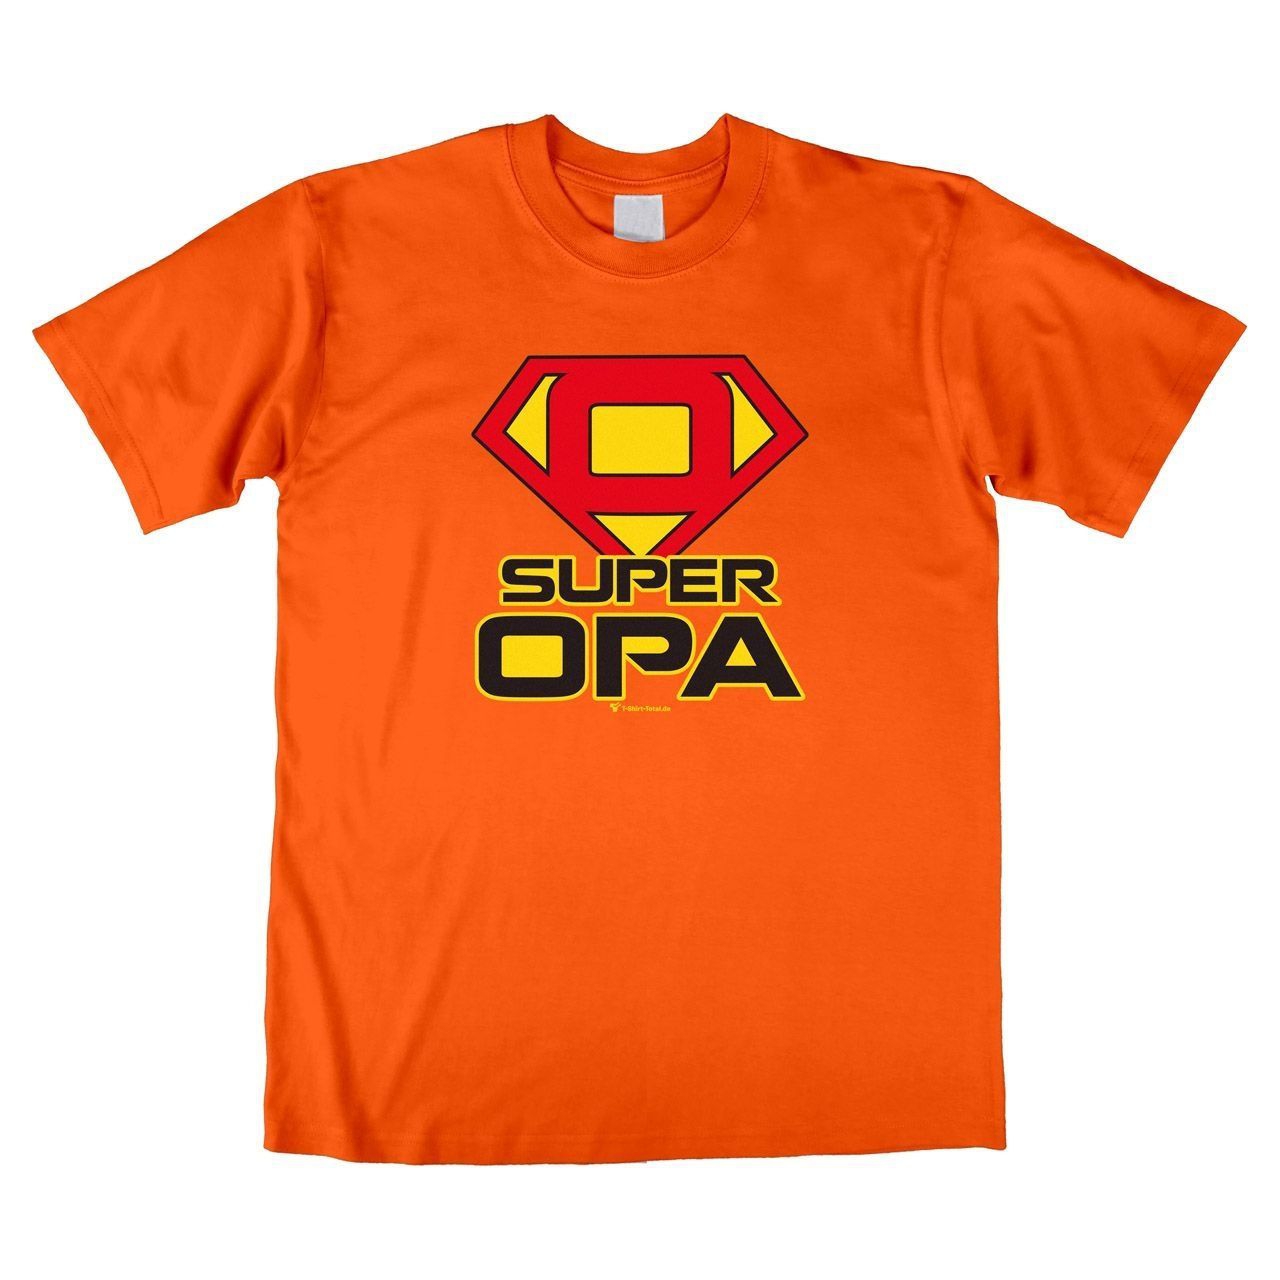 Super Opa Unisex T-Shirt orange Large